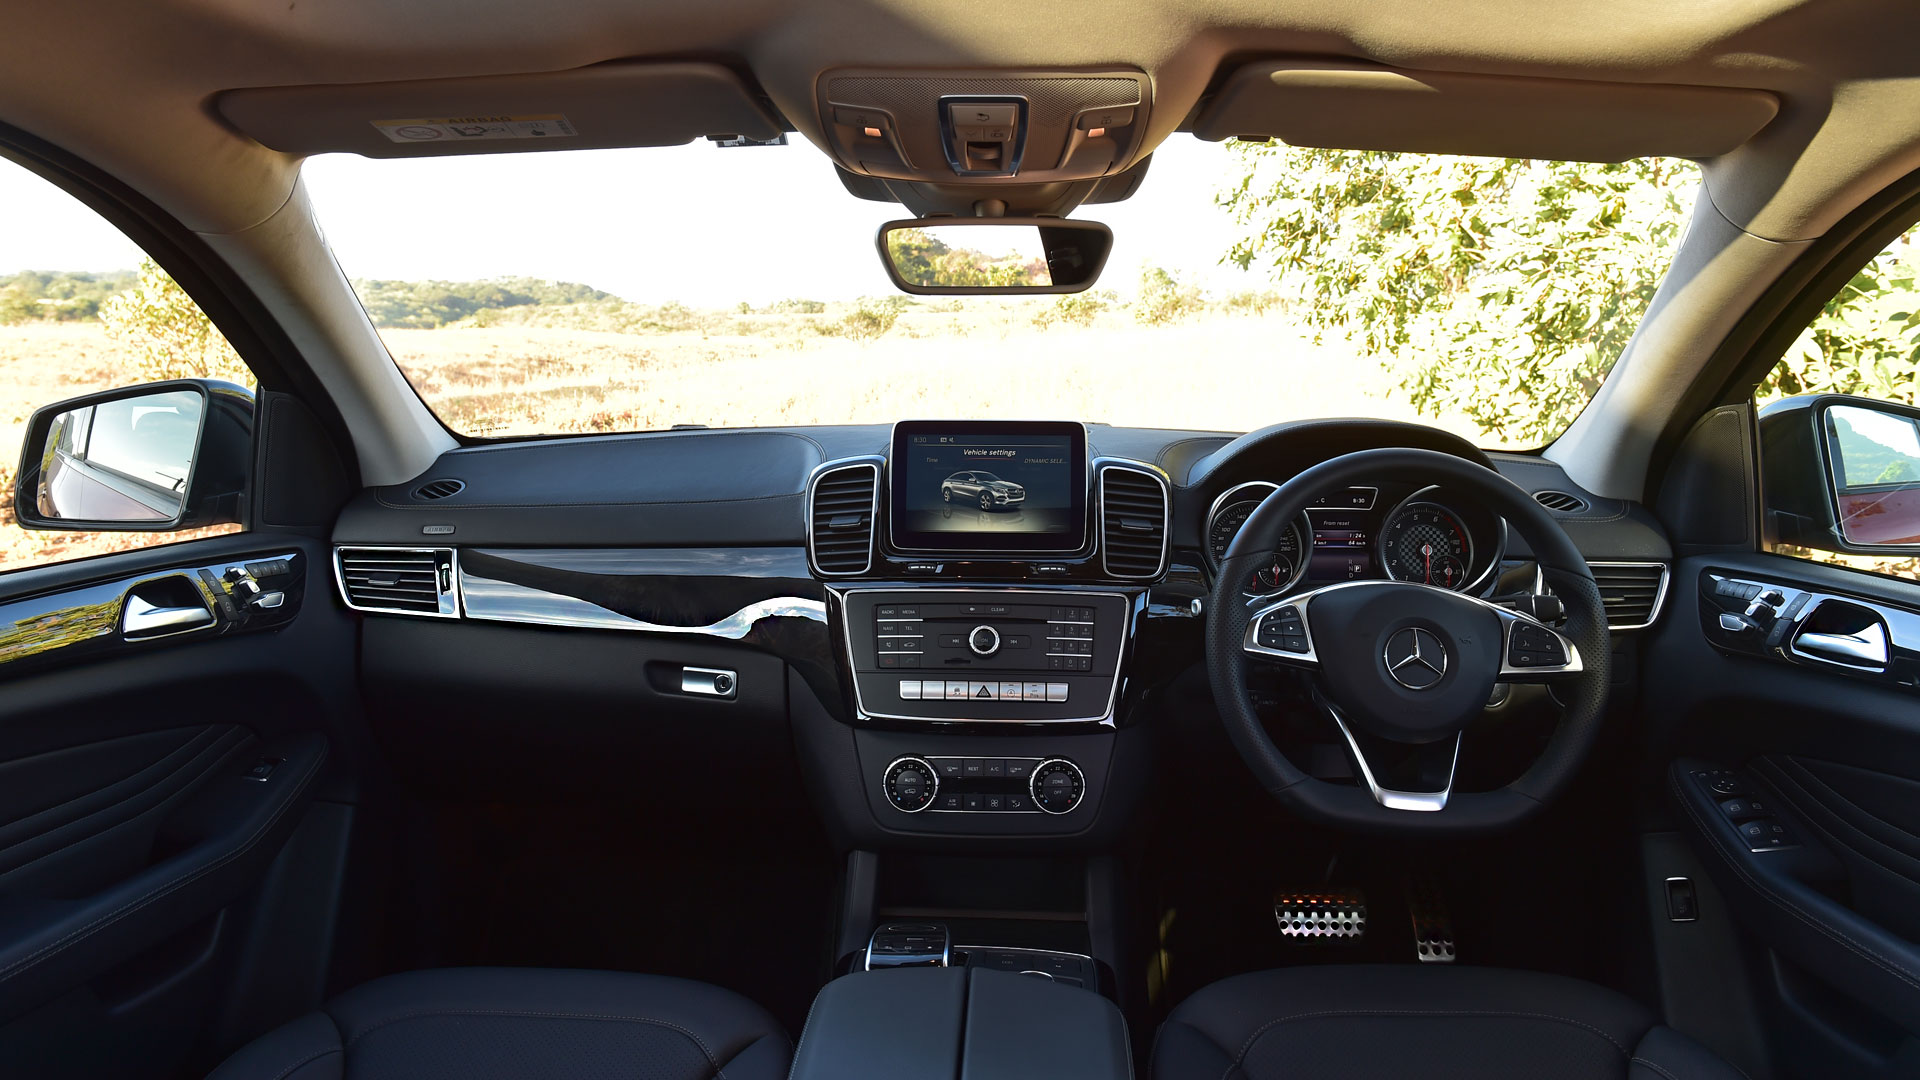 Mercedes Benz Gle 2016 450 Amg Coupe Interior Car Photos